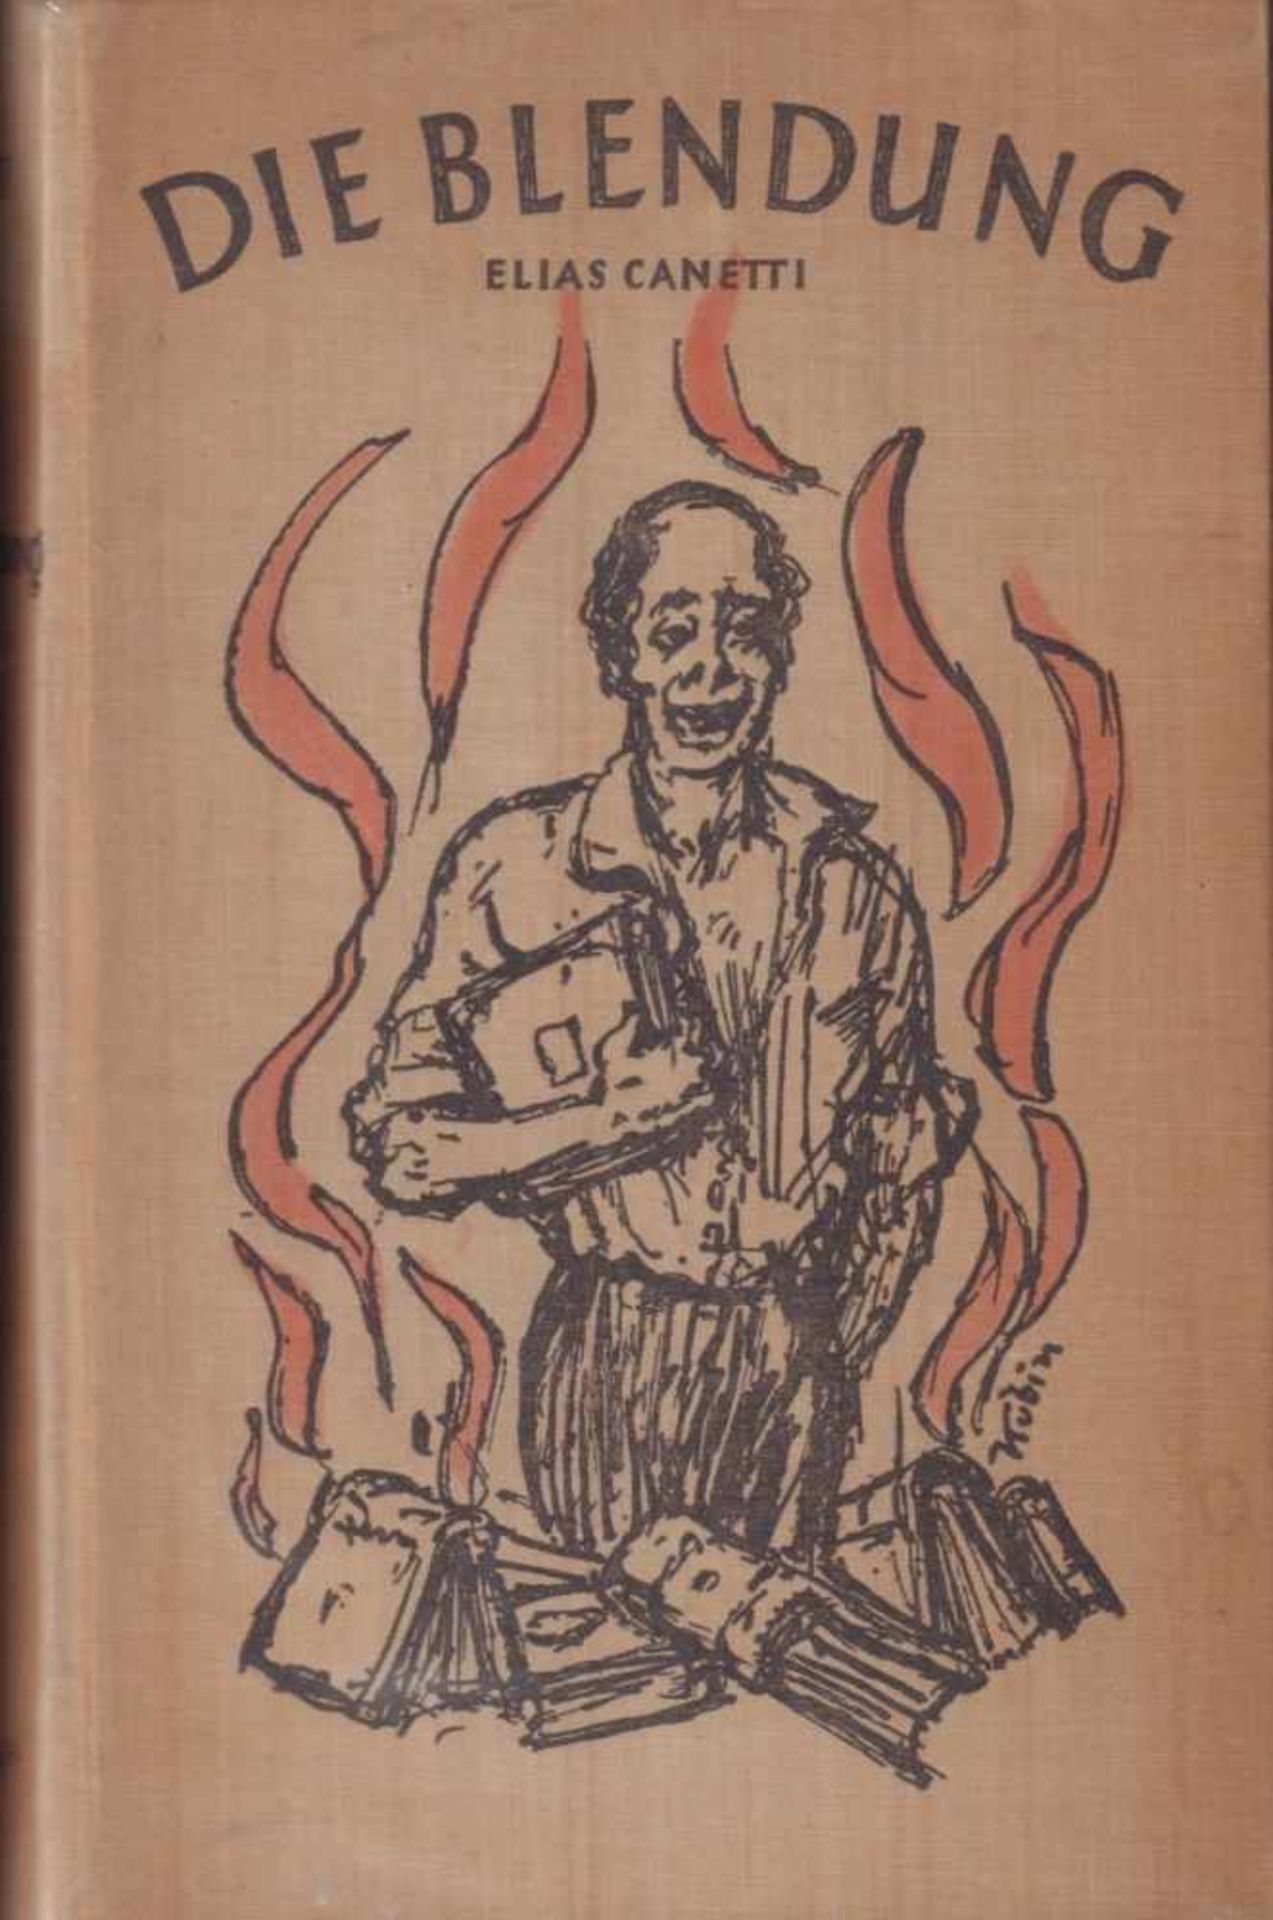 Elias Canetti. Die Blendung. Roman. Wien, Reichner 1936. 8°. 560 S. Von Alfred Kubin illustrierter